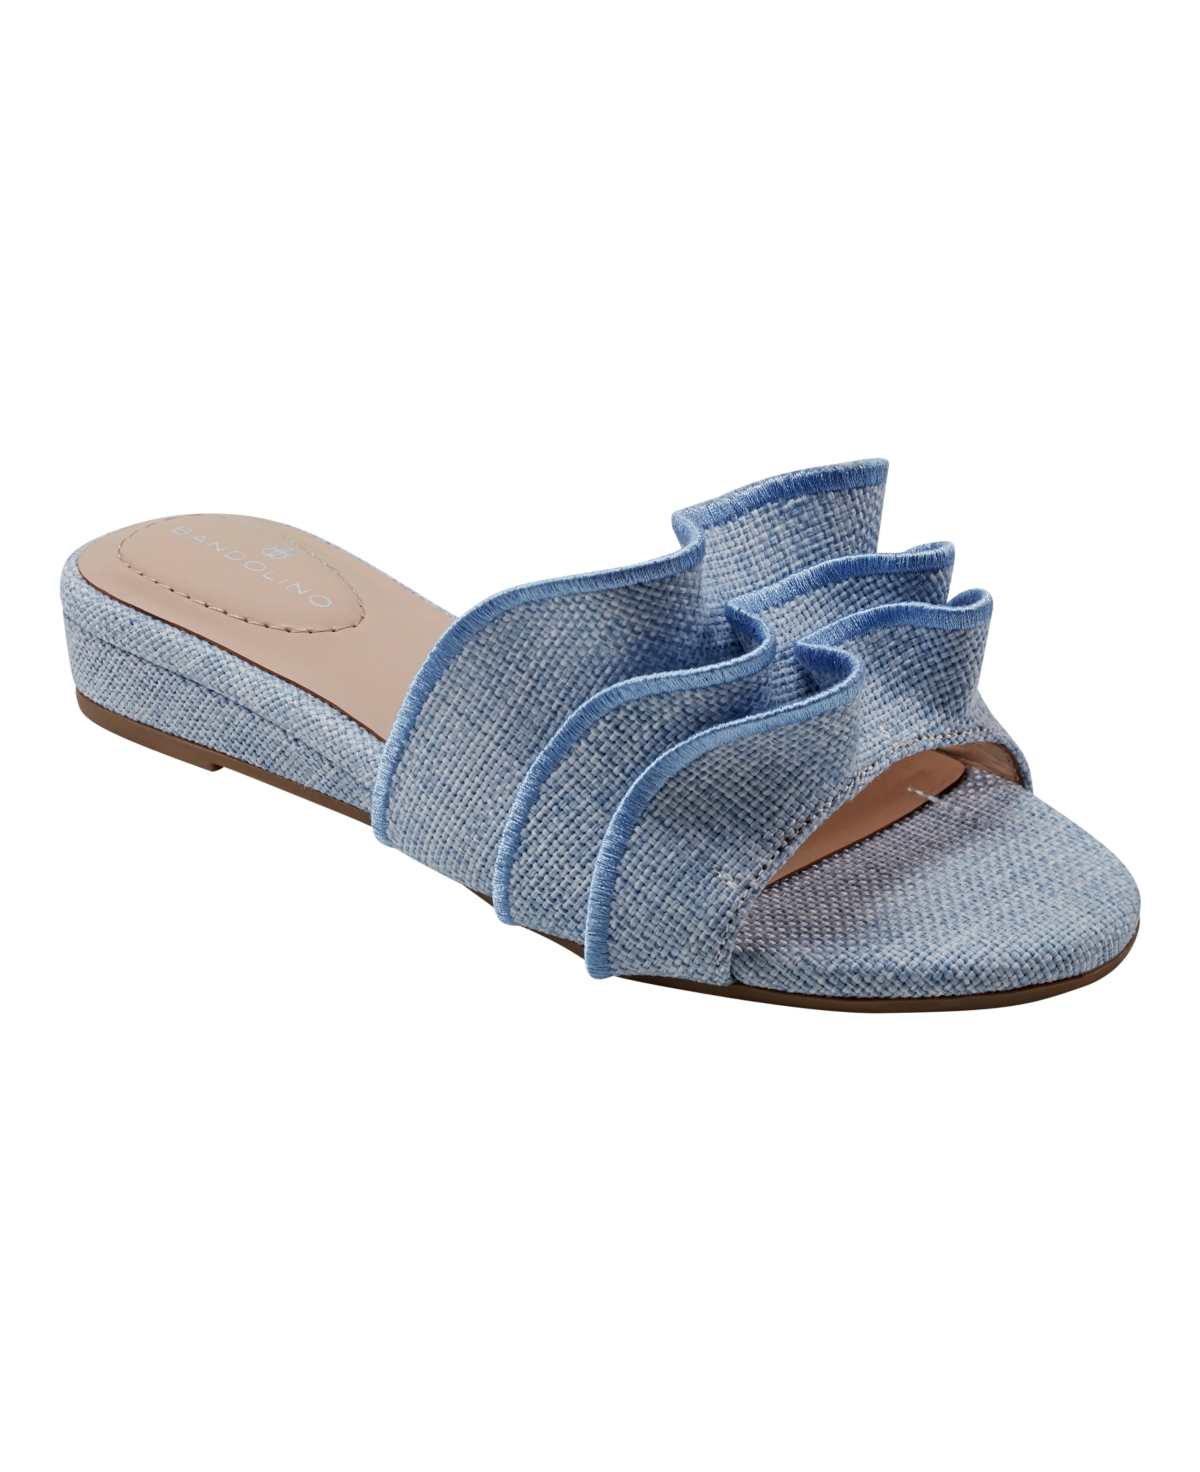 Women's Kaisley Ruffled Sliver-Tone Wedge Sandals - Light Blue